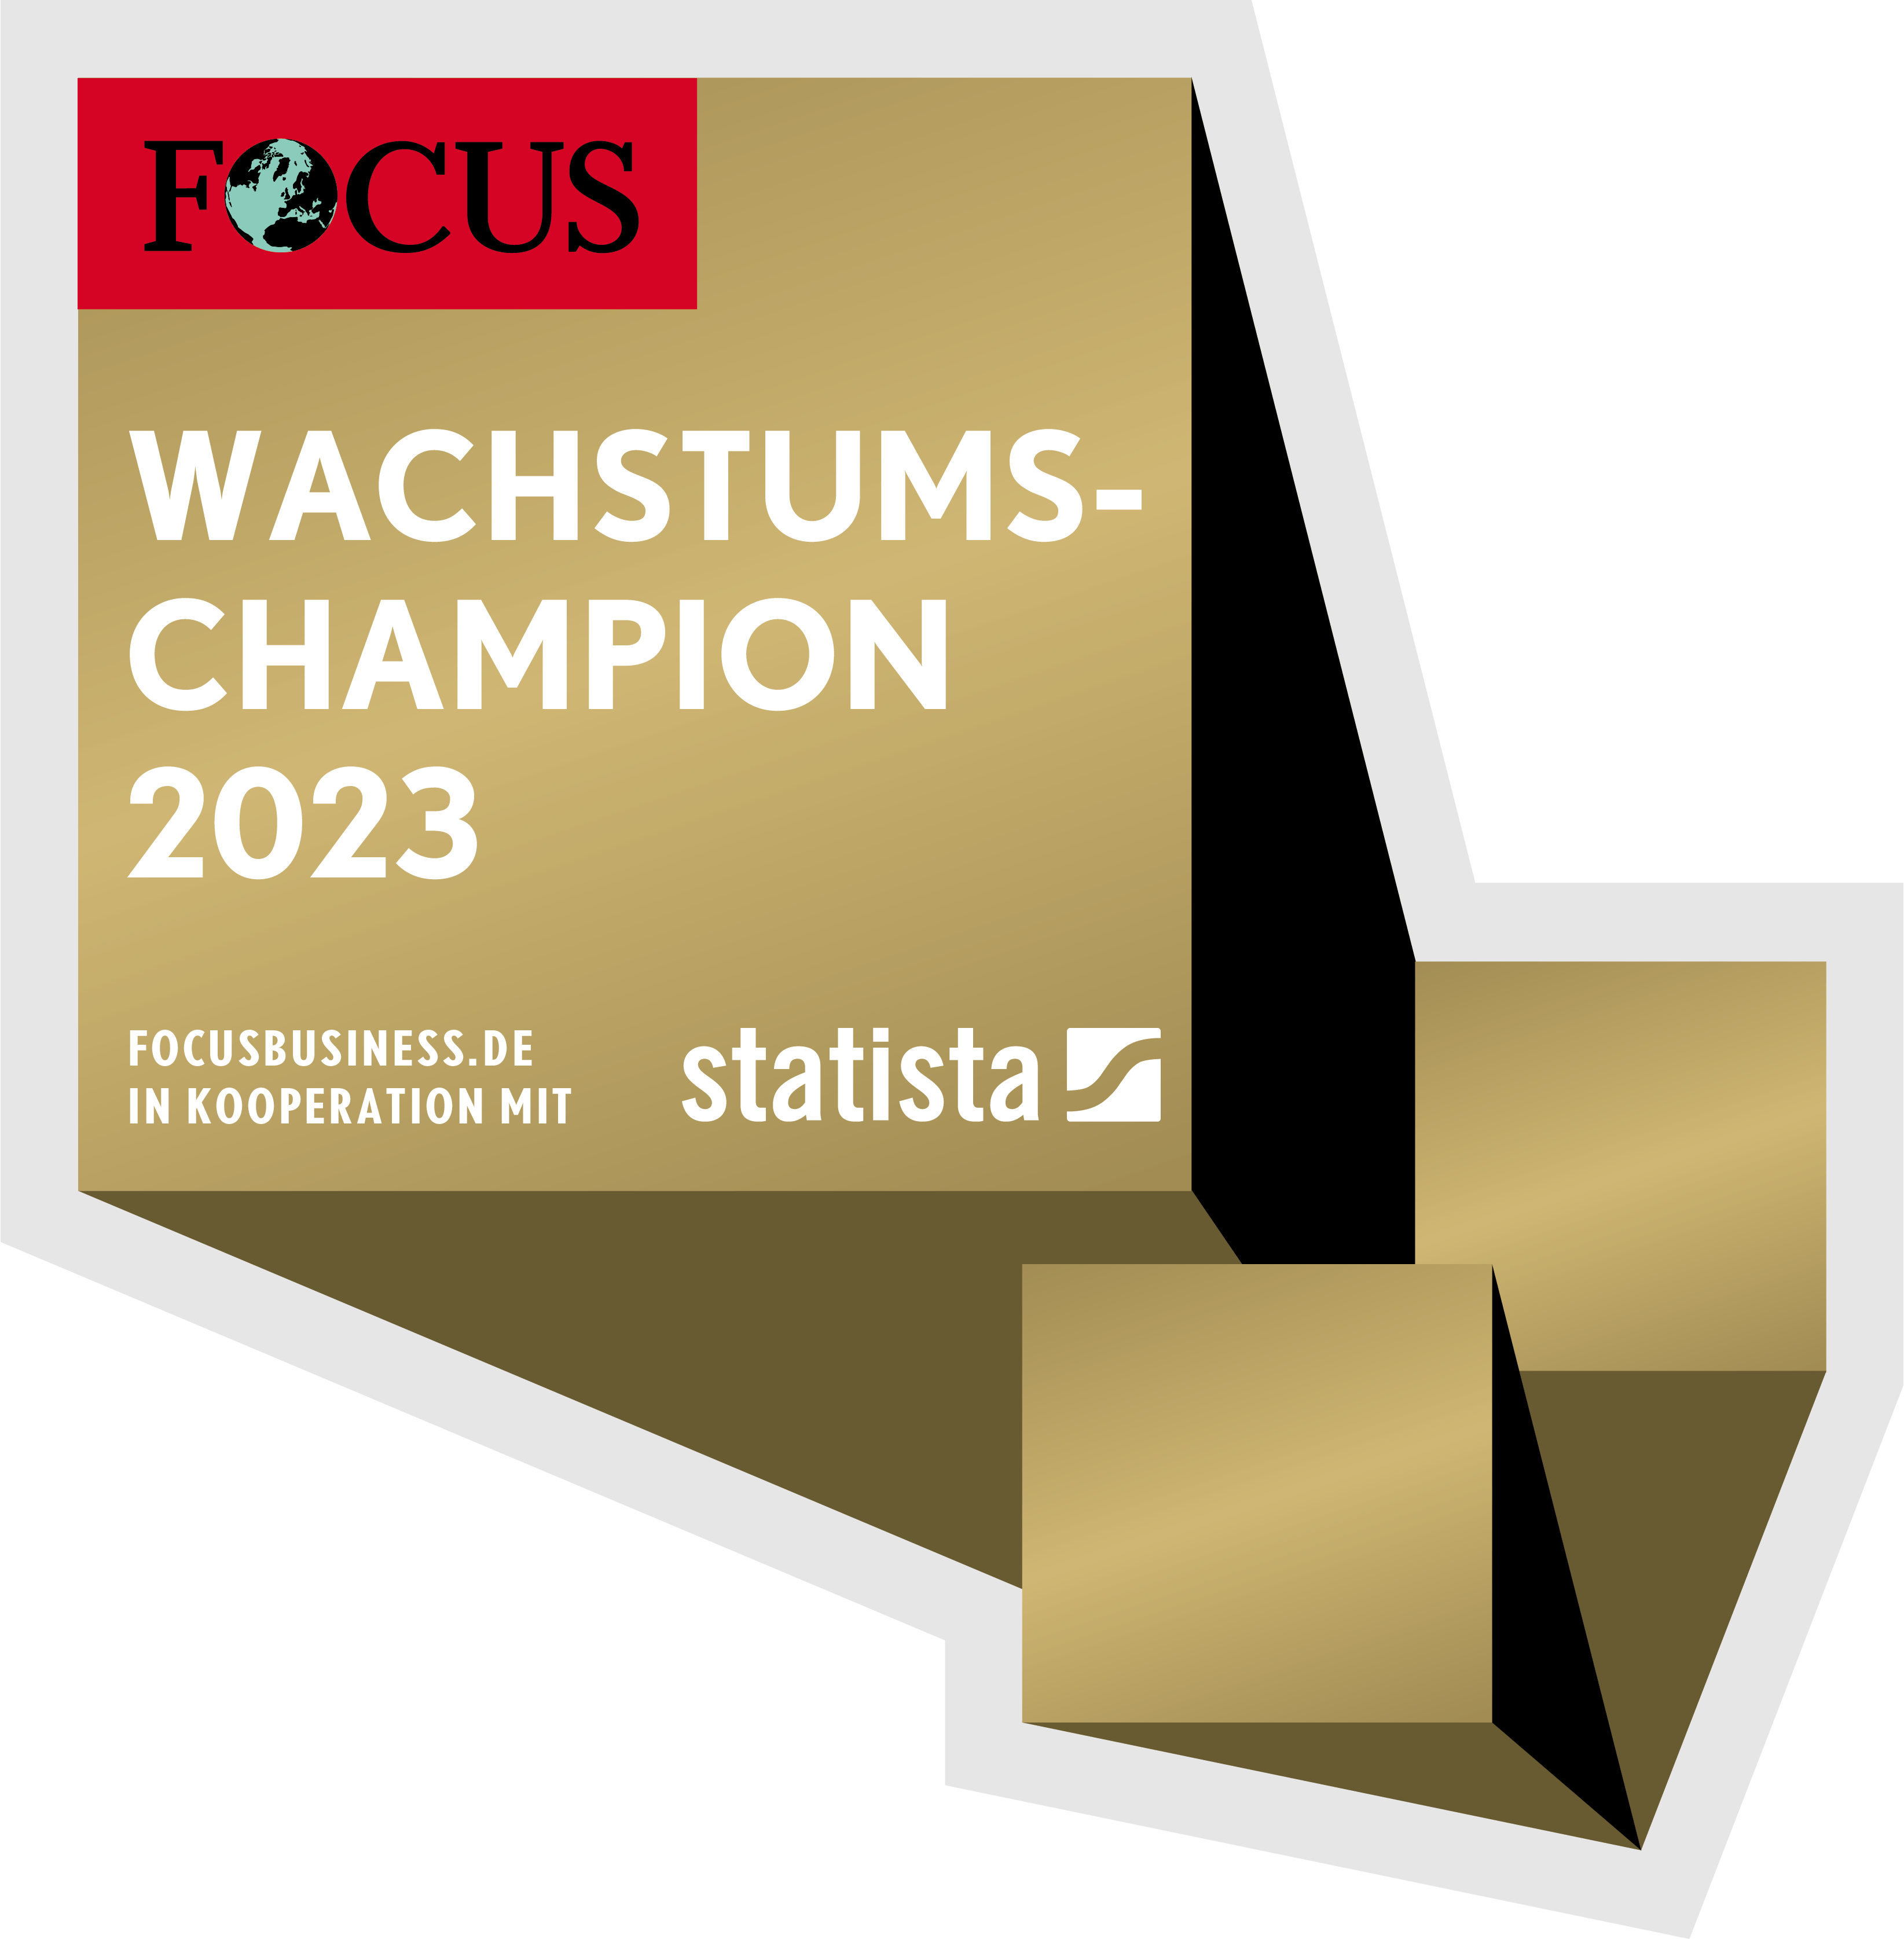 Focus Wachstums-Champion 2023